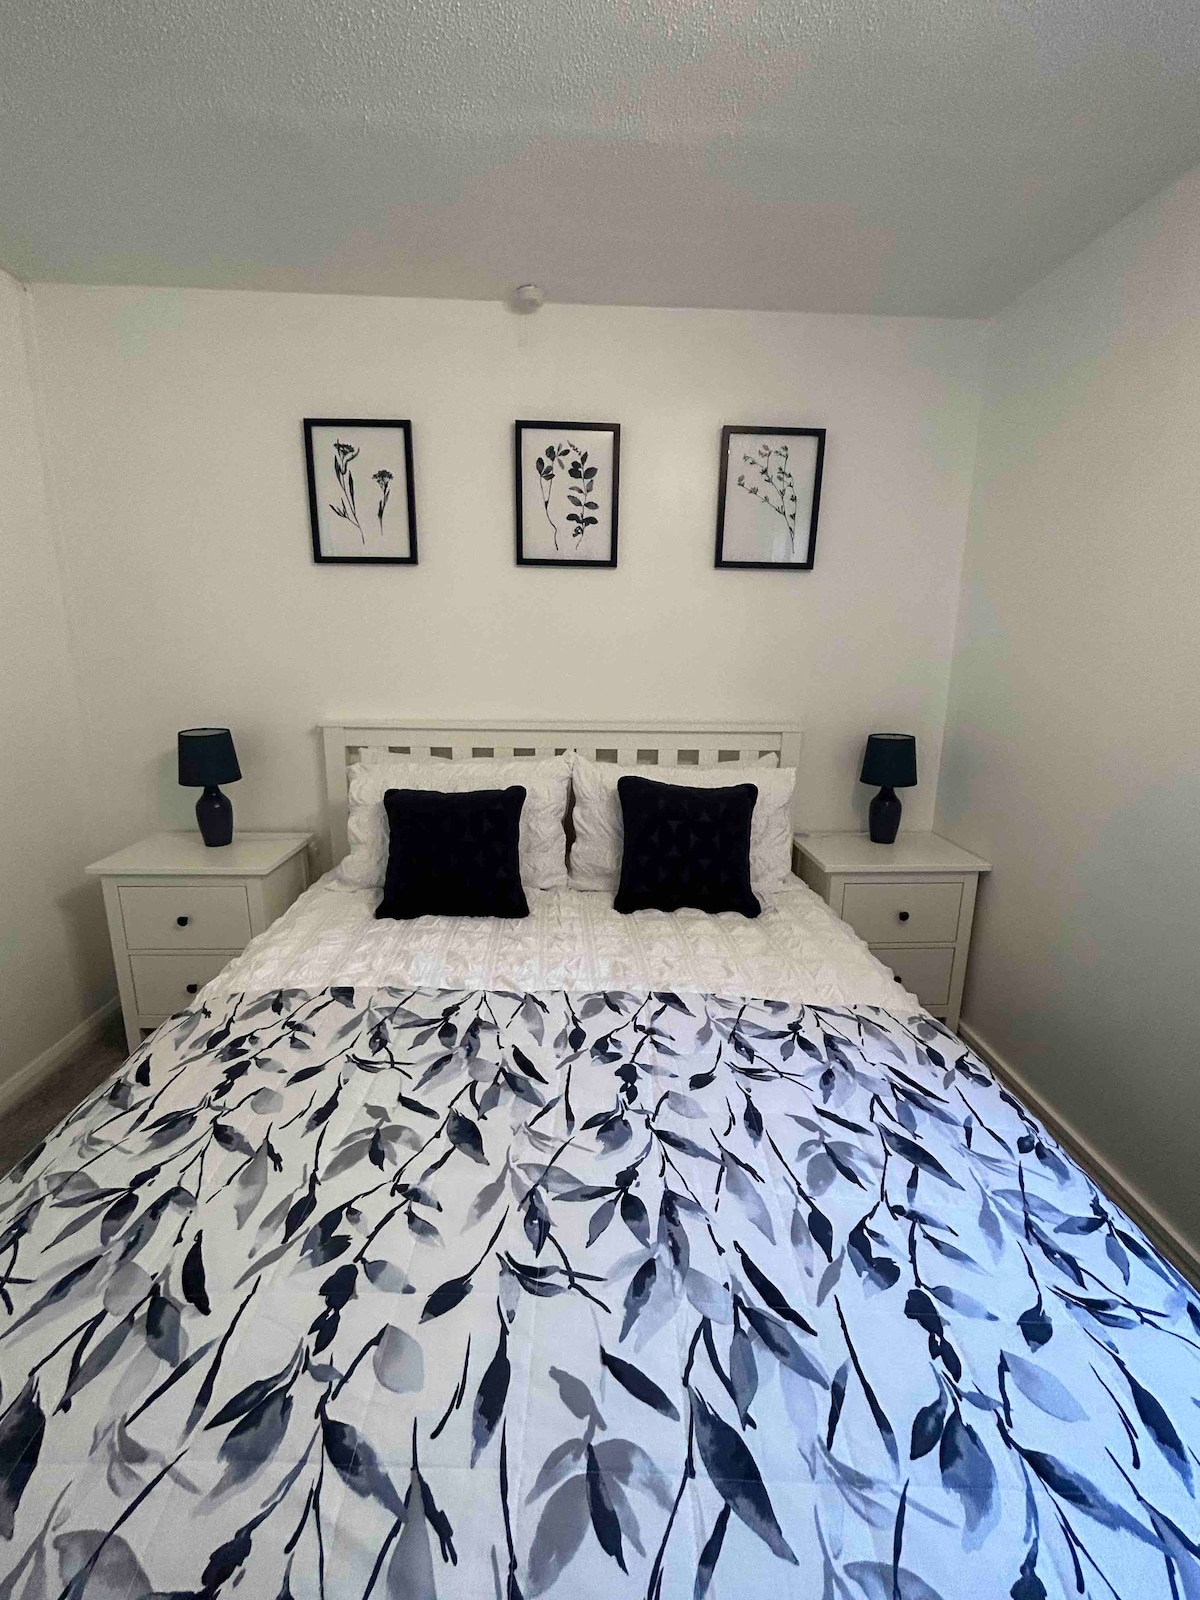 2 bedroom flat in silverstone